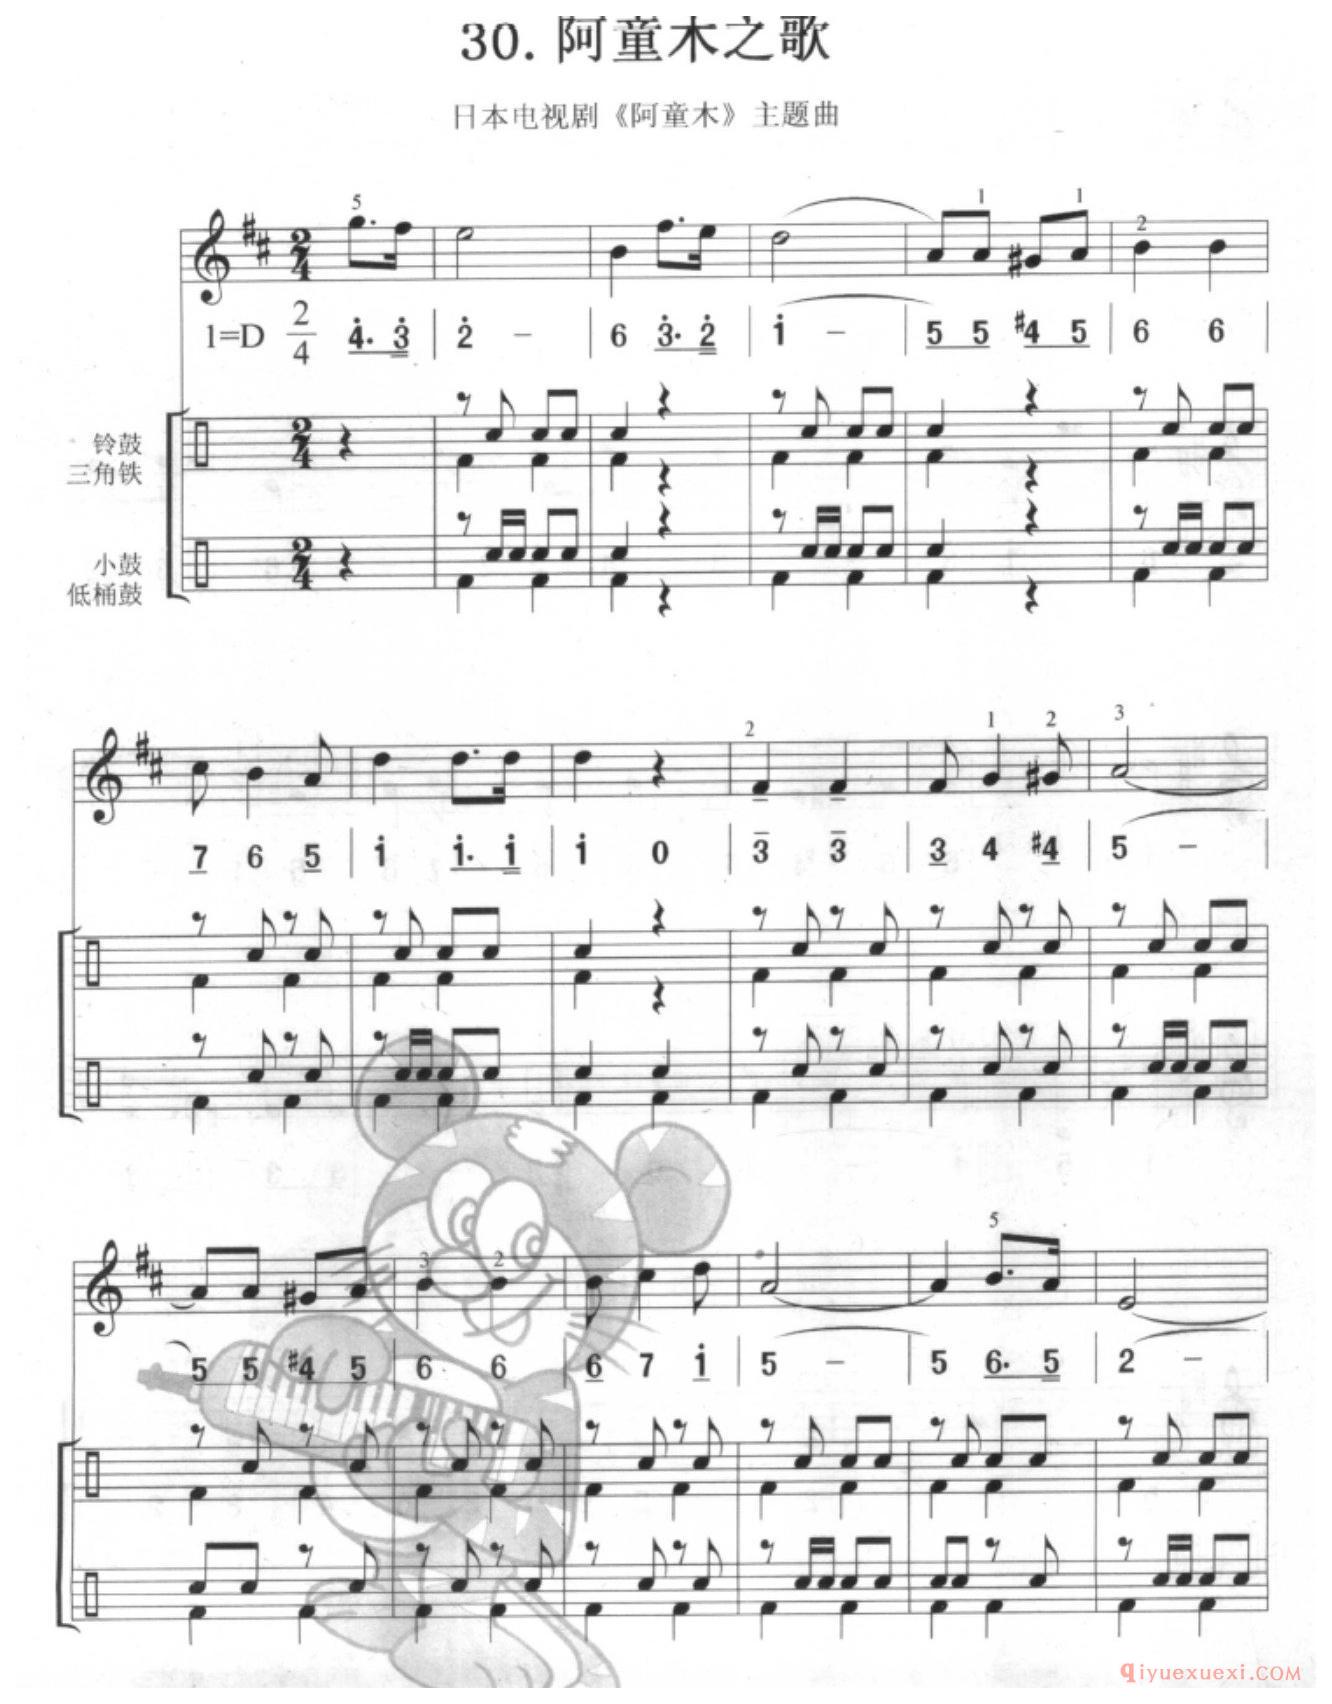 口风琴多声部乐曲《阿童木之歌（总谱)》加入打击乐的练习